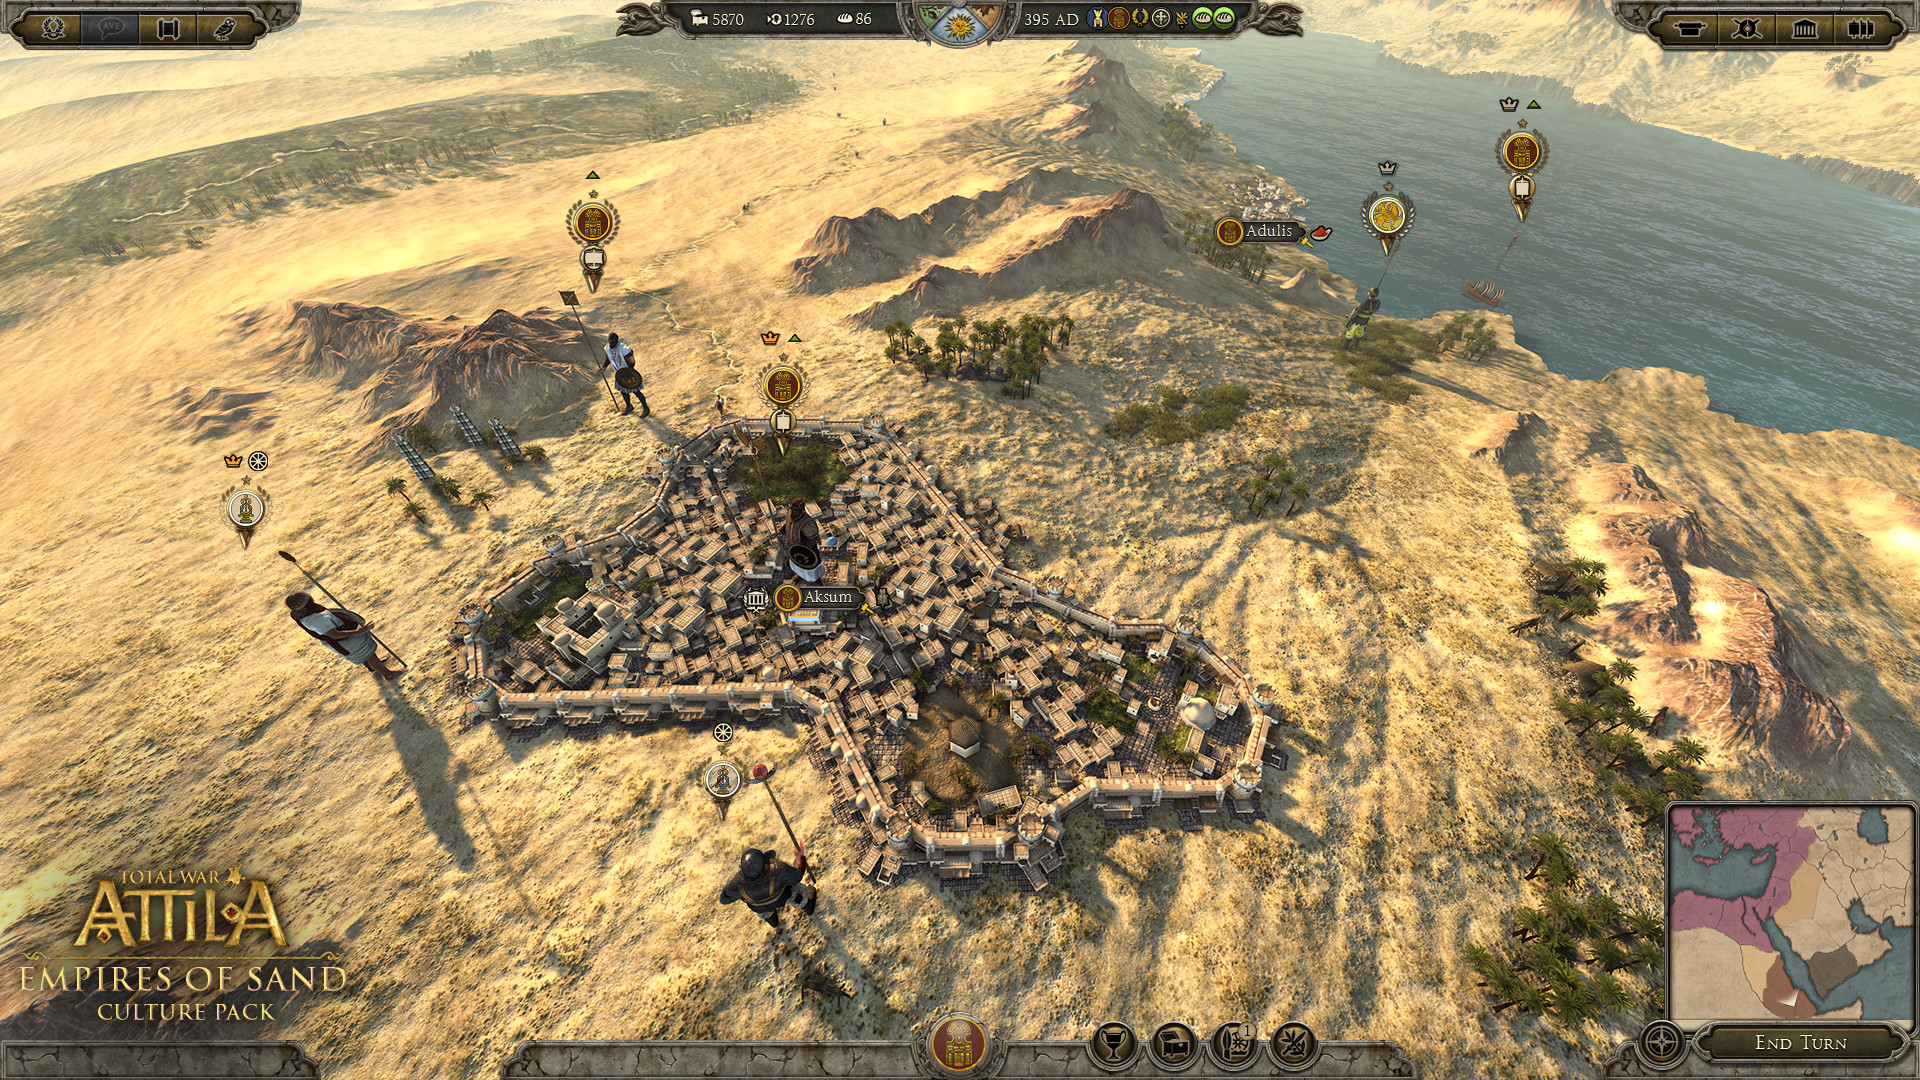 Total War: ATTILA - Empires of Sand Culture Pack screenshot